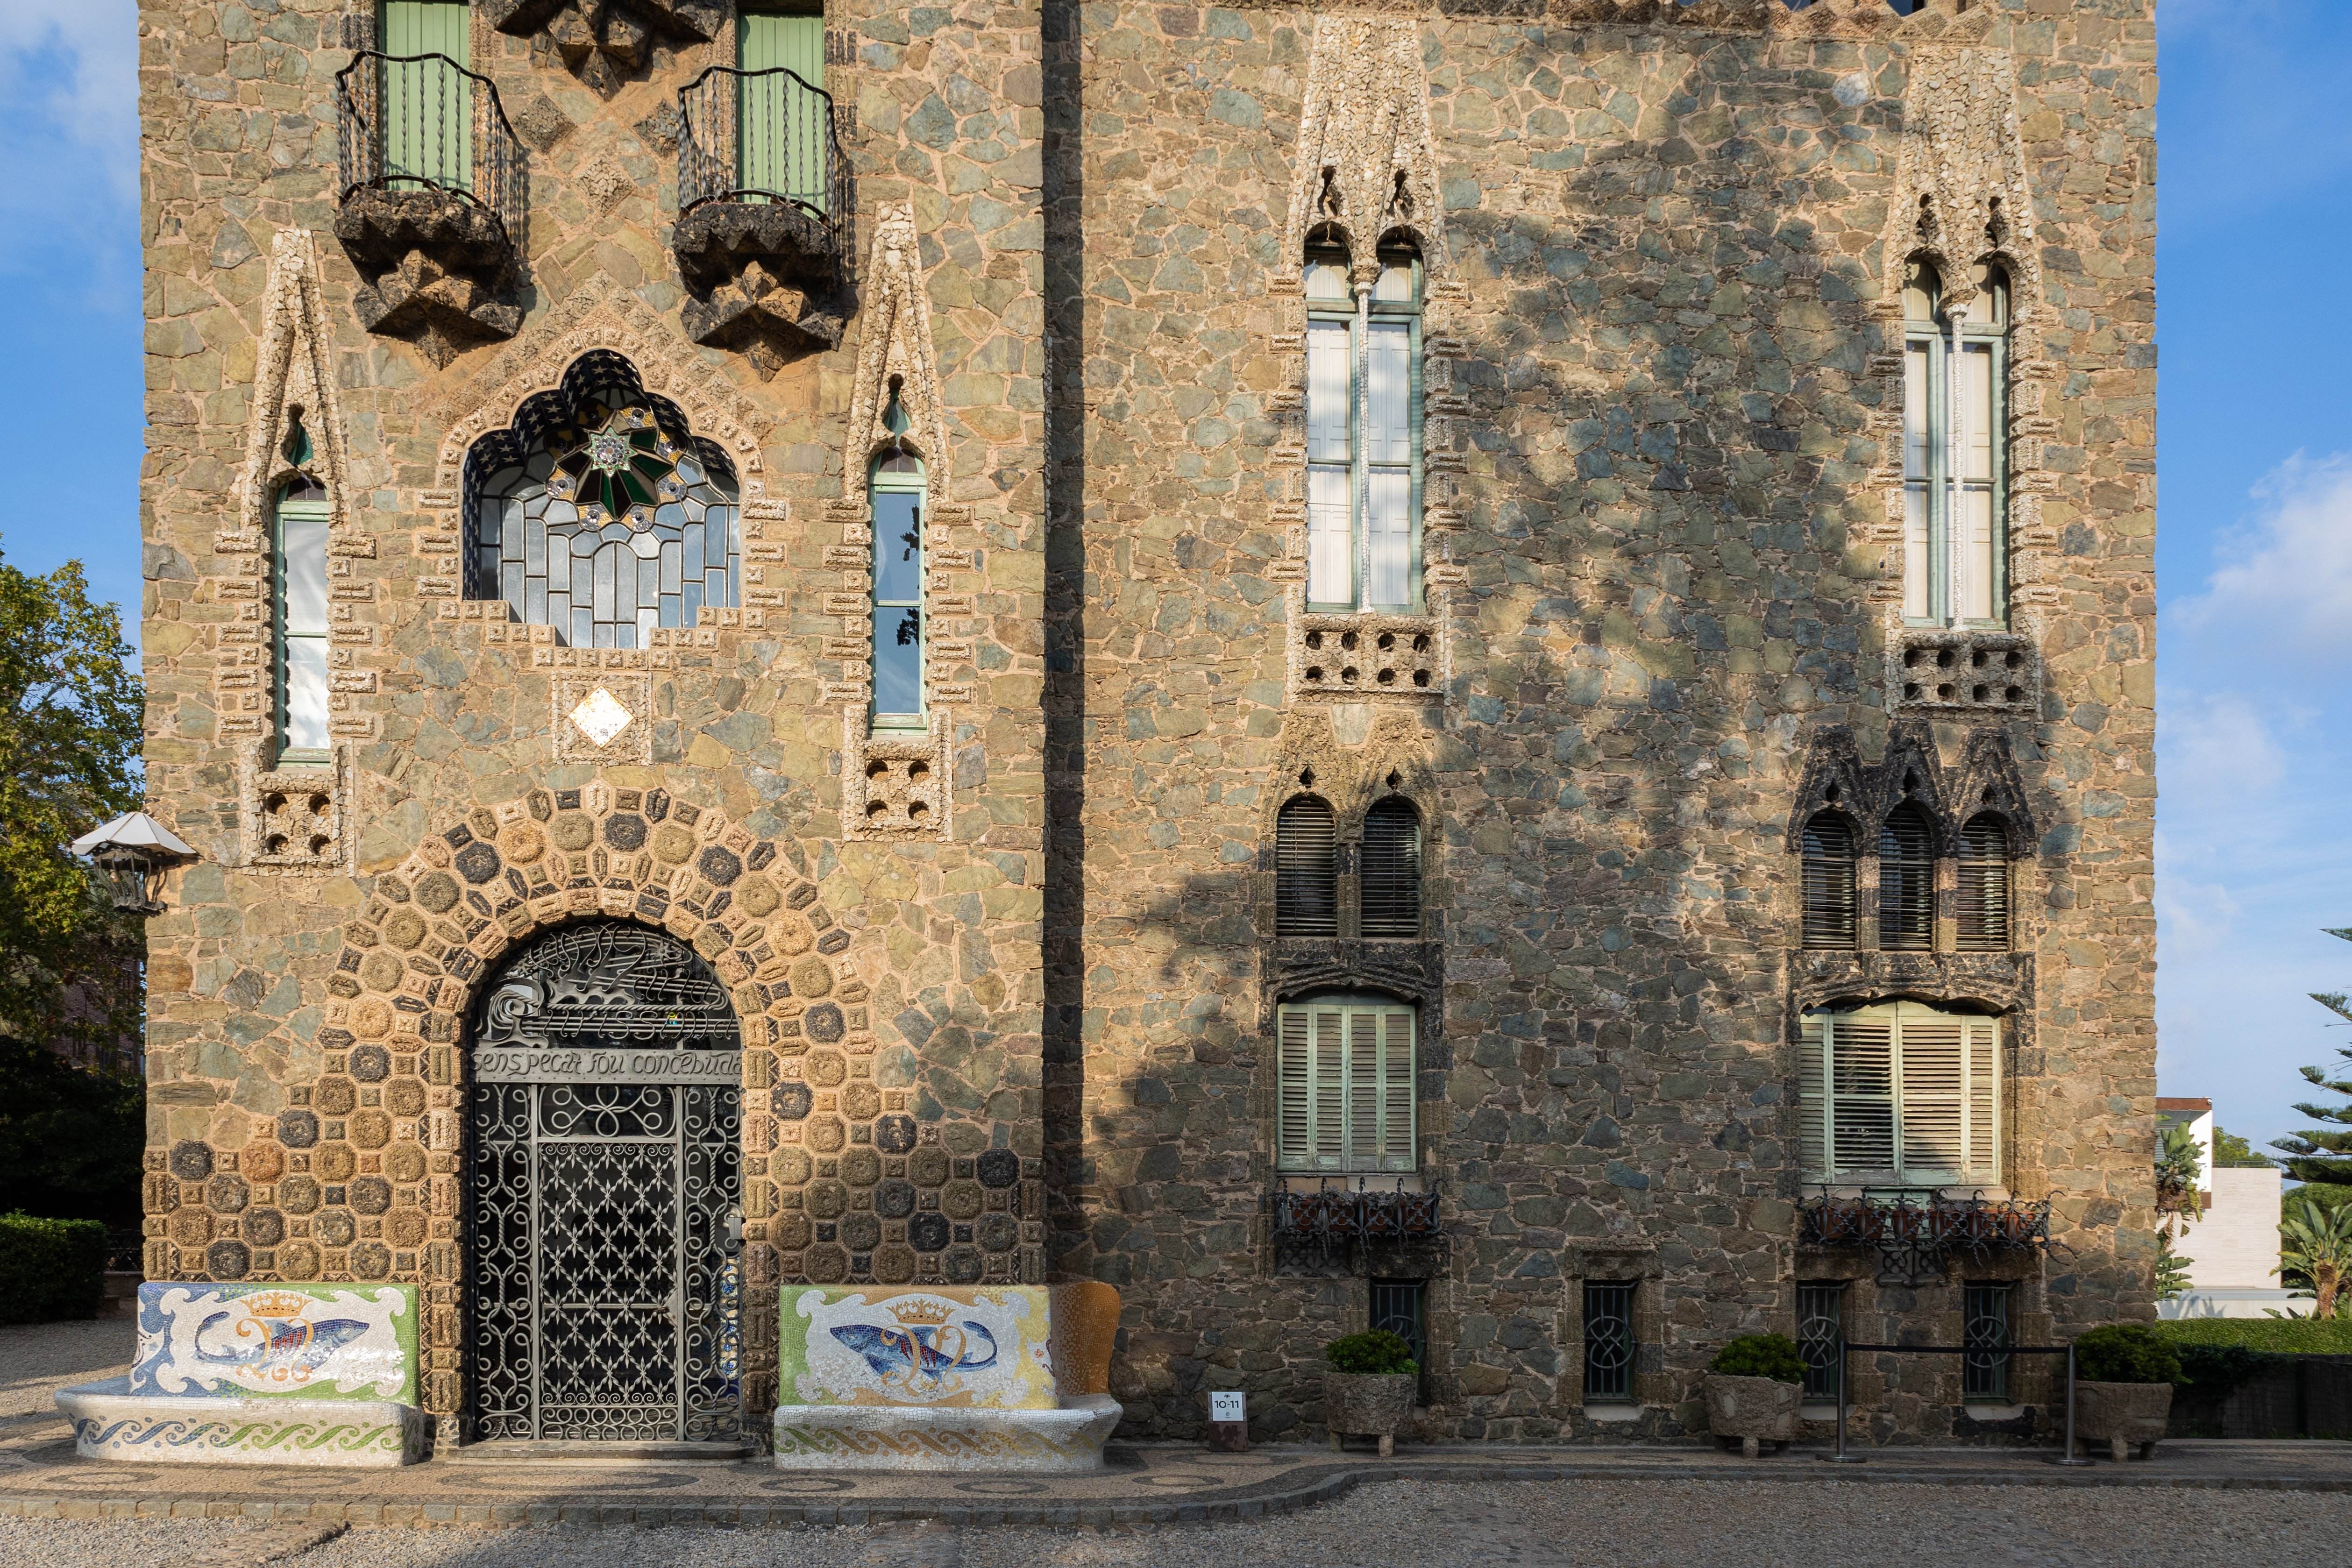 Seis obras de Antoni Gaudí suman esfuerzos por convertirse en patrimonio de la humanidad